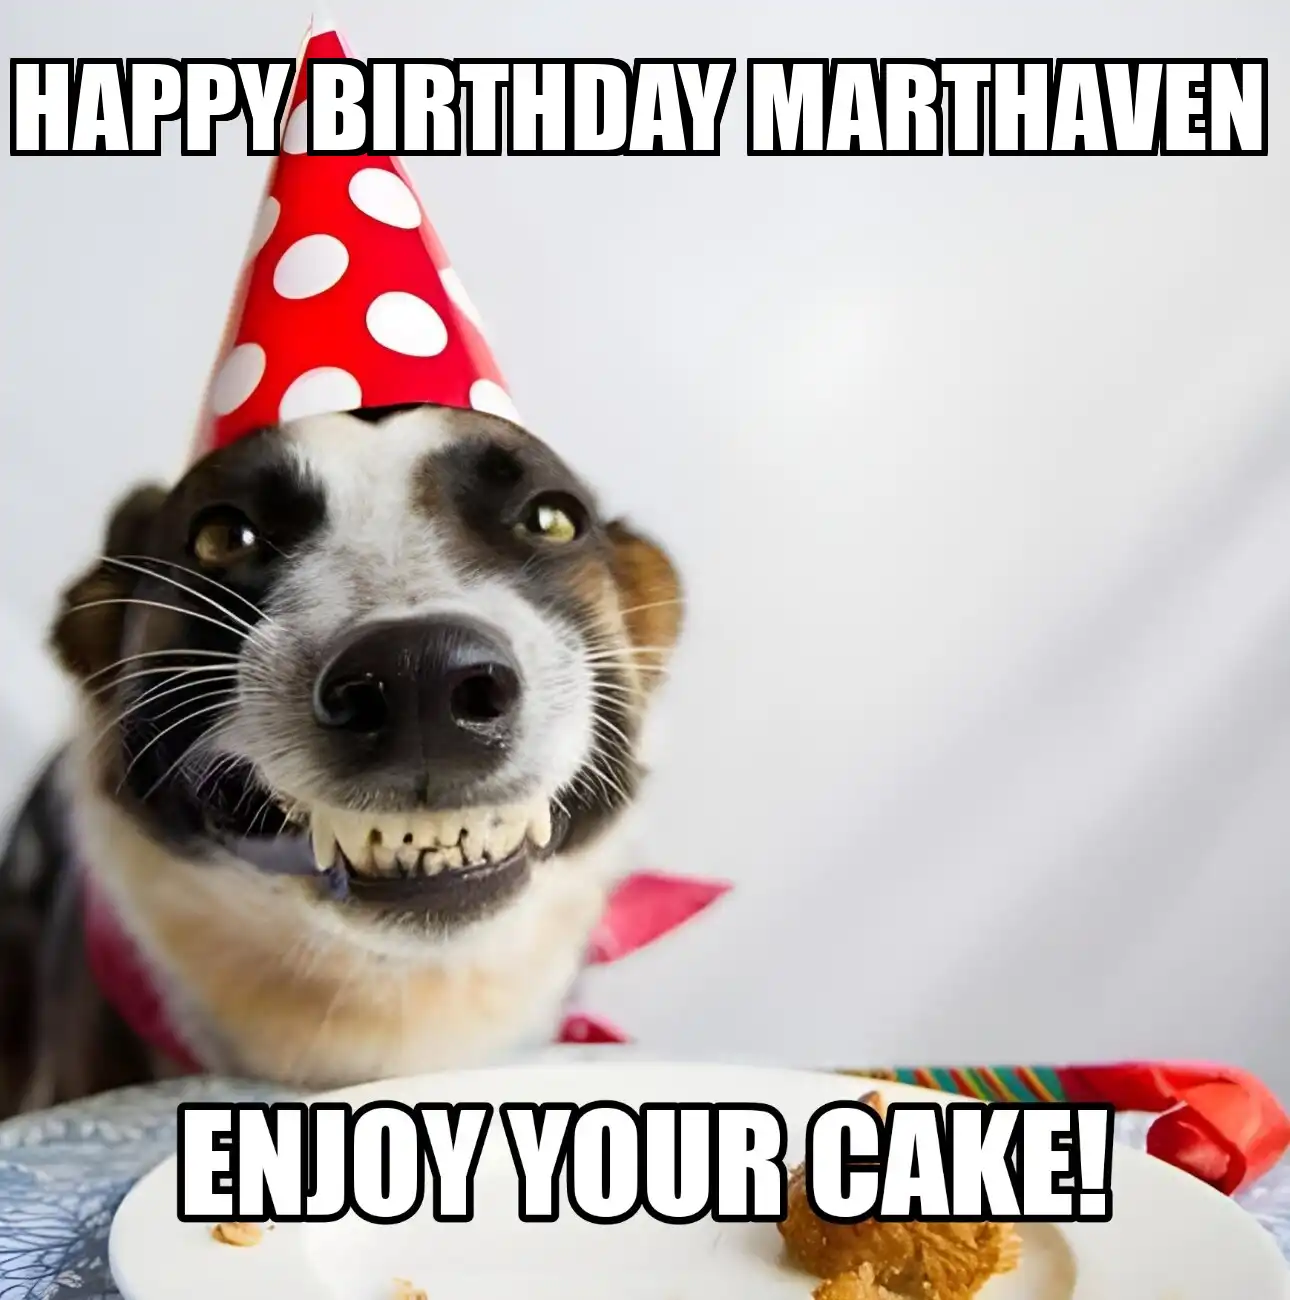 Happy Birthday Marthaven Enjoy Your Cake Dog Meme